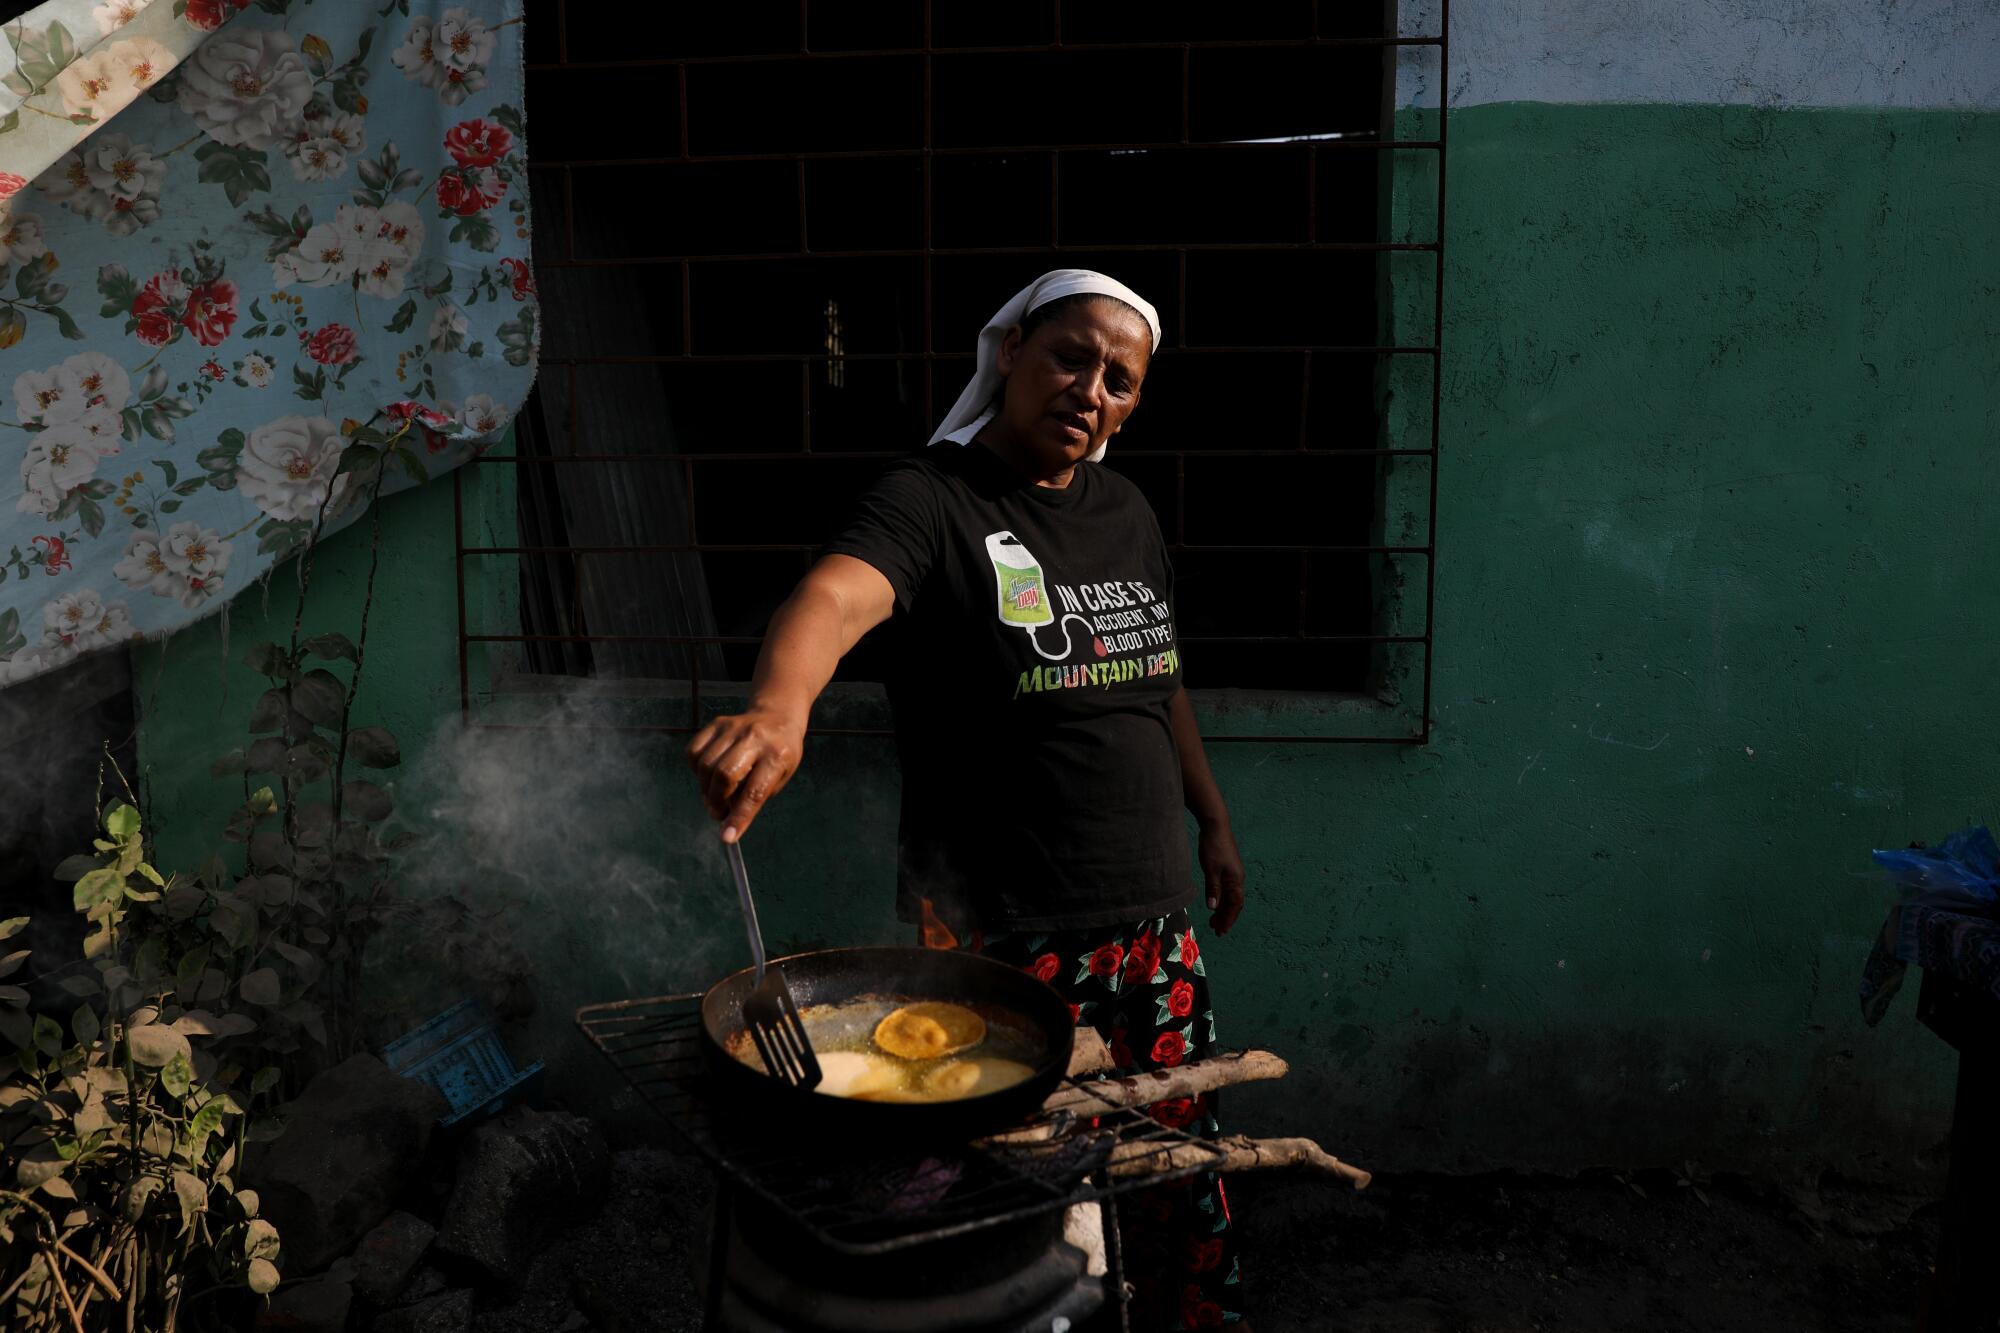 A woman prepares enchiladas over an outdoor stove